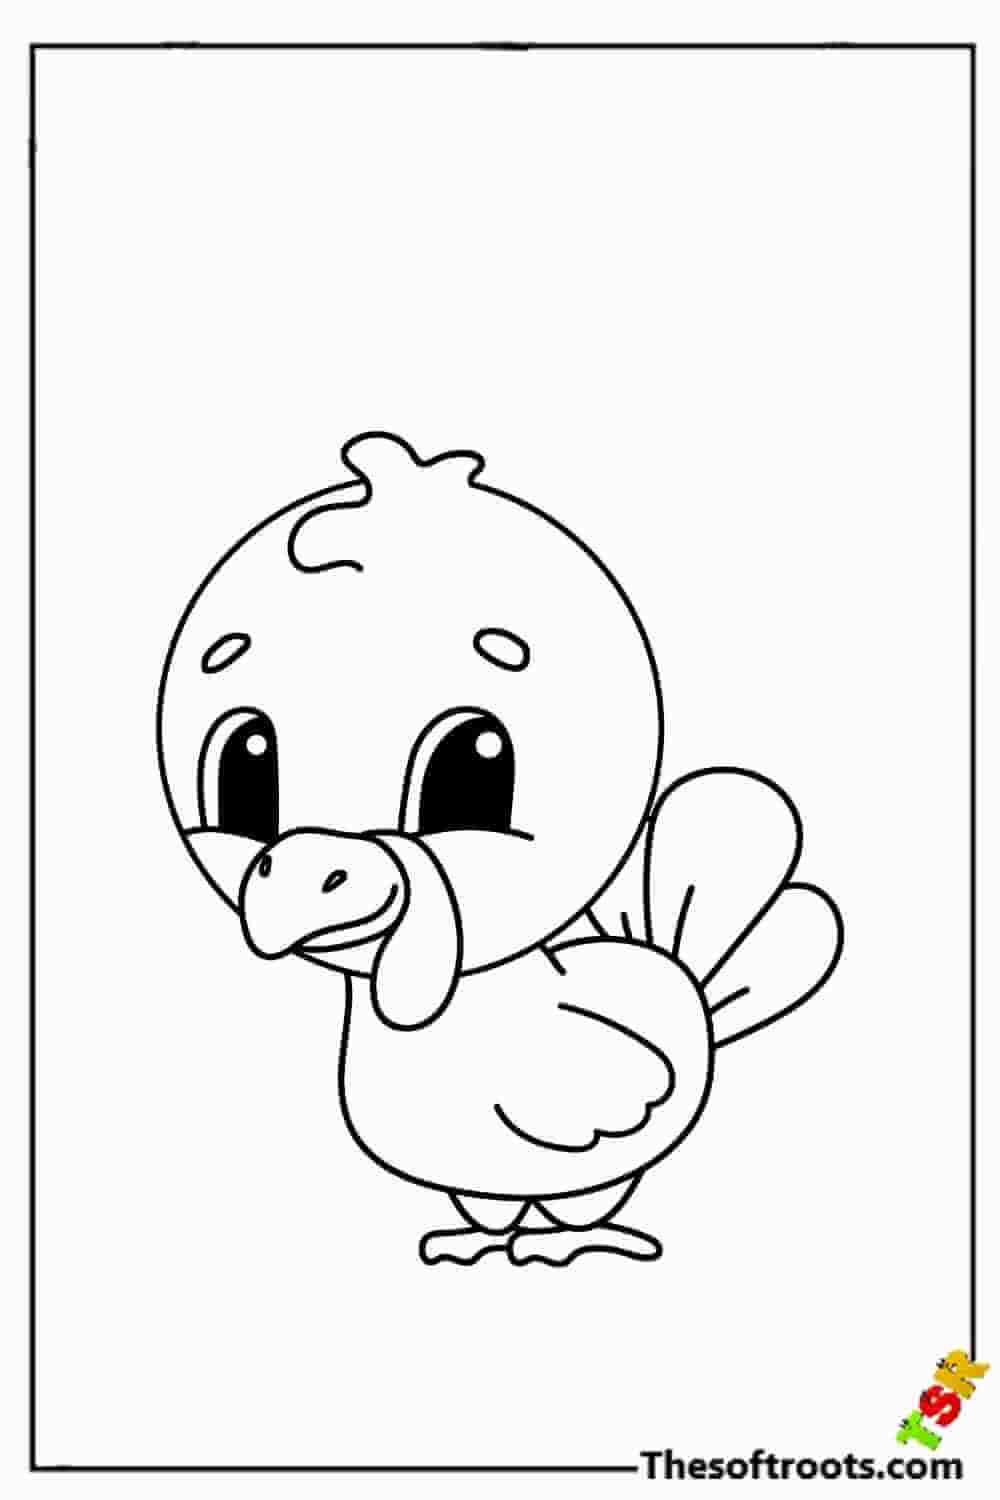 Cartoon turkey for preschooler coloring pages